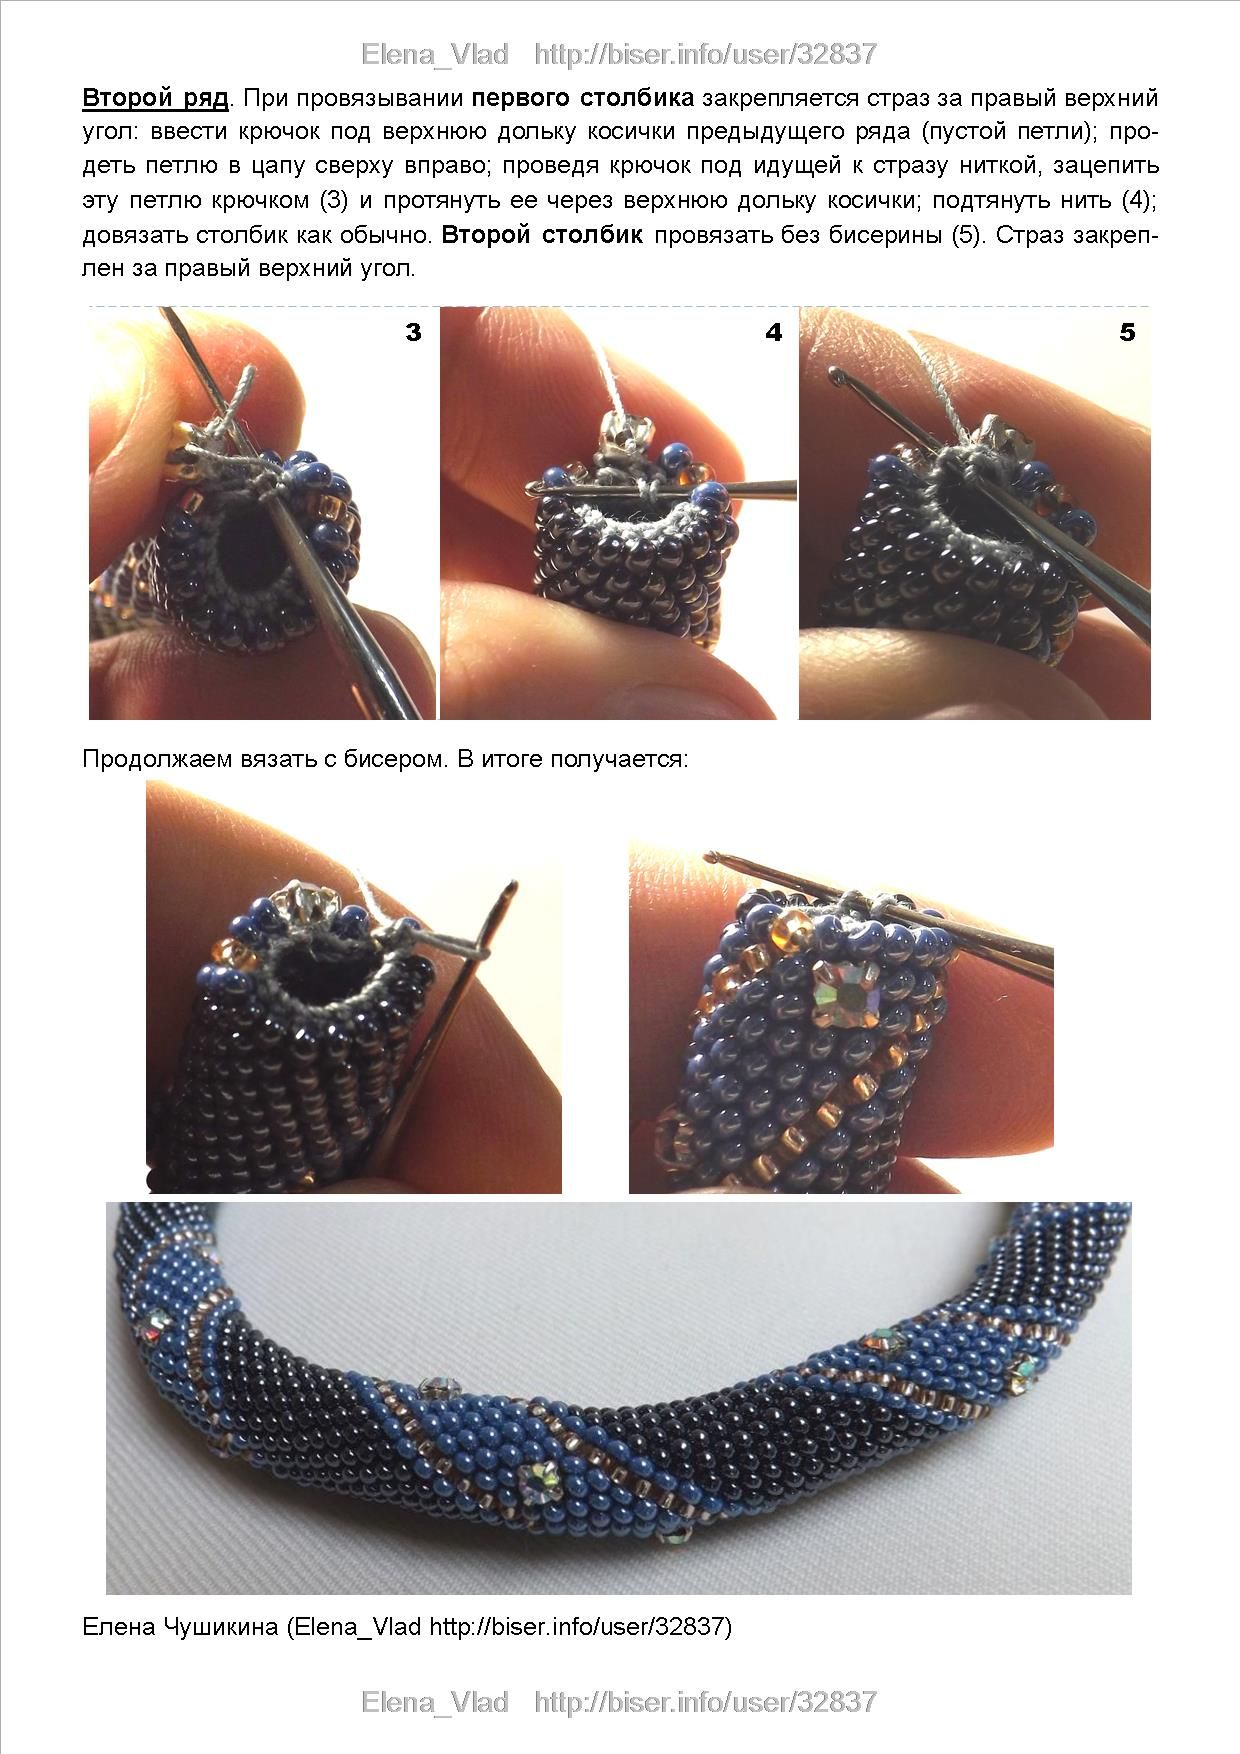 Обучаемся технике плетения турецкого жгута из бисера и бусин